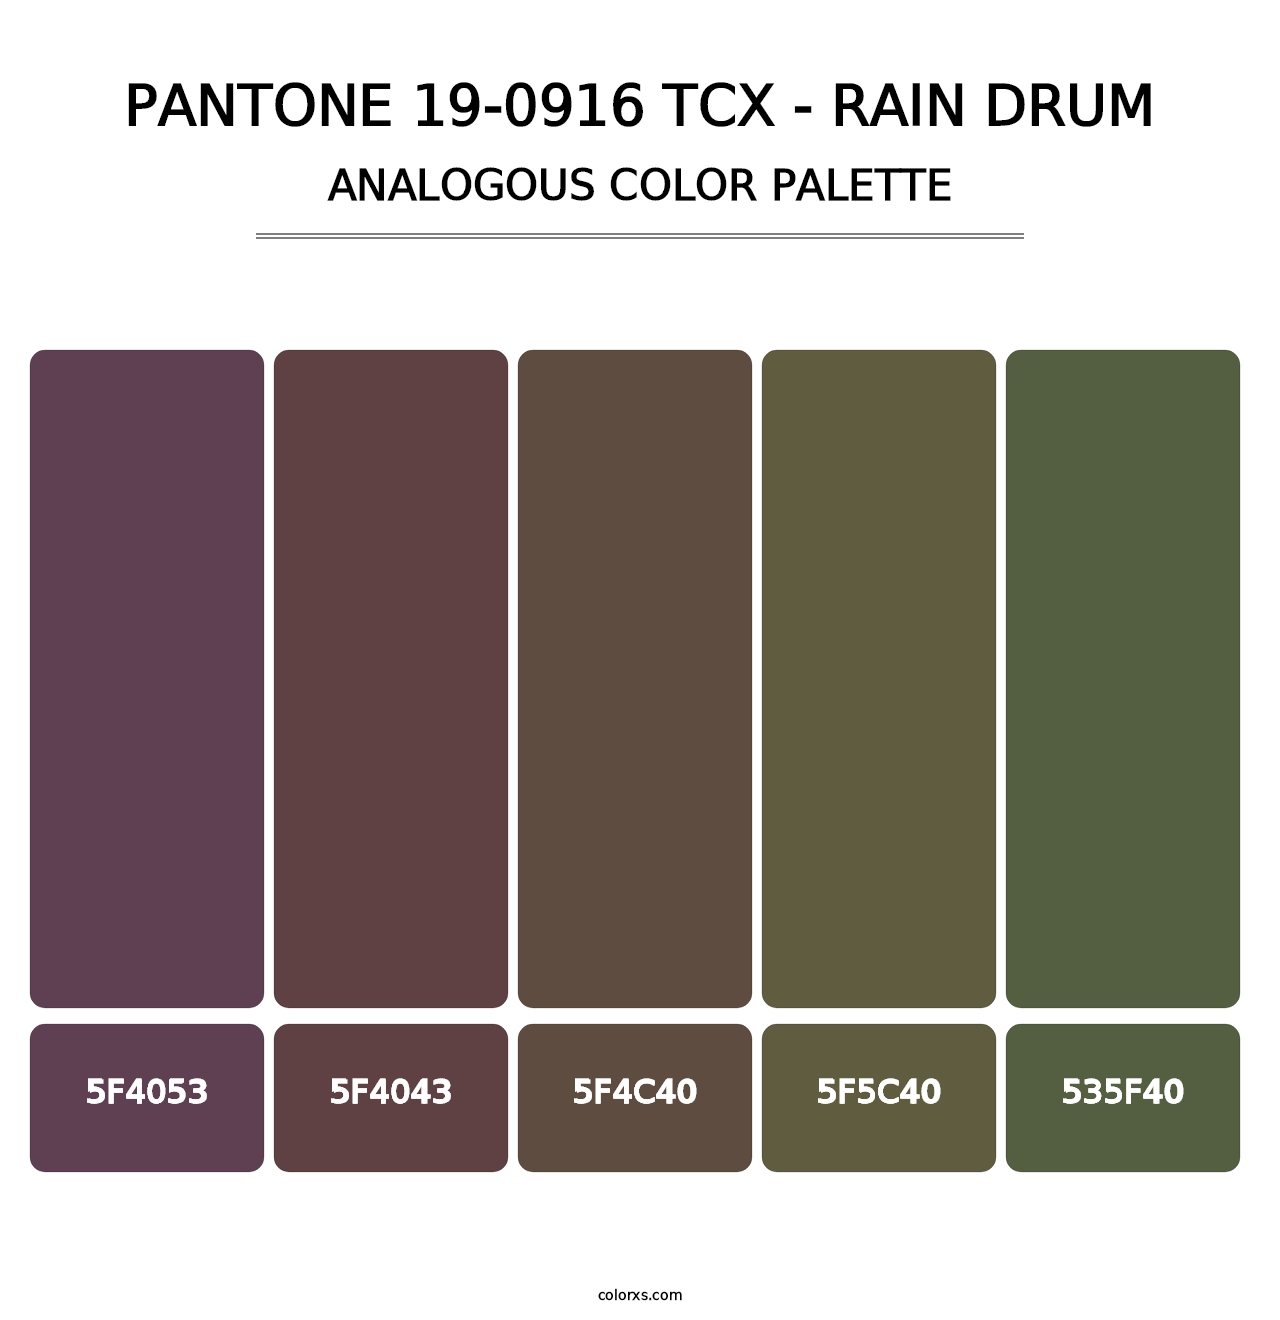 PANTONE 19-0916 TCX - Rain Drum - Analogous Color Palette